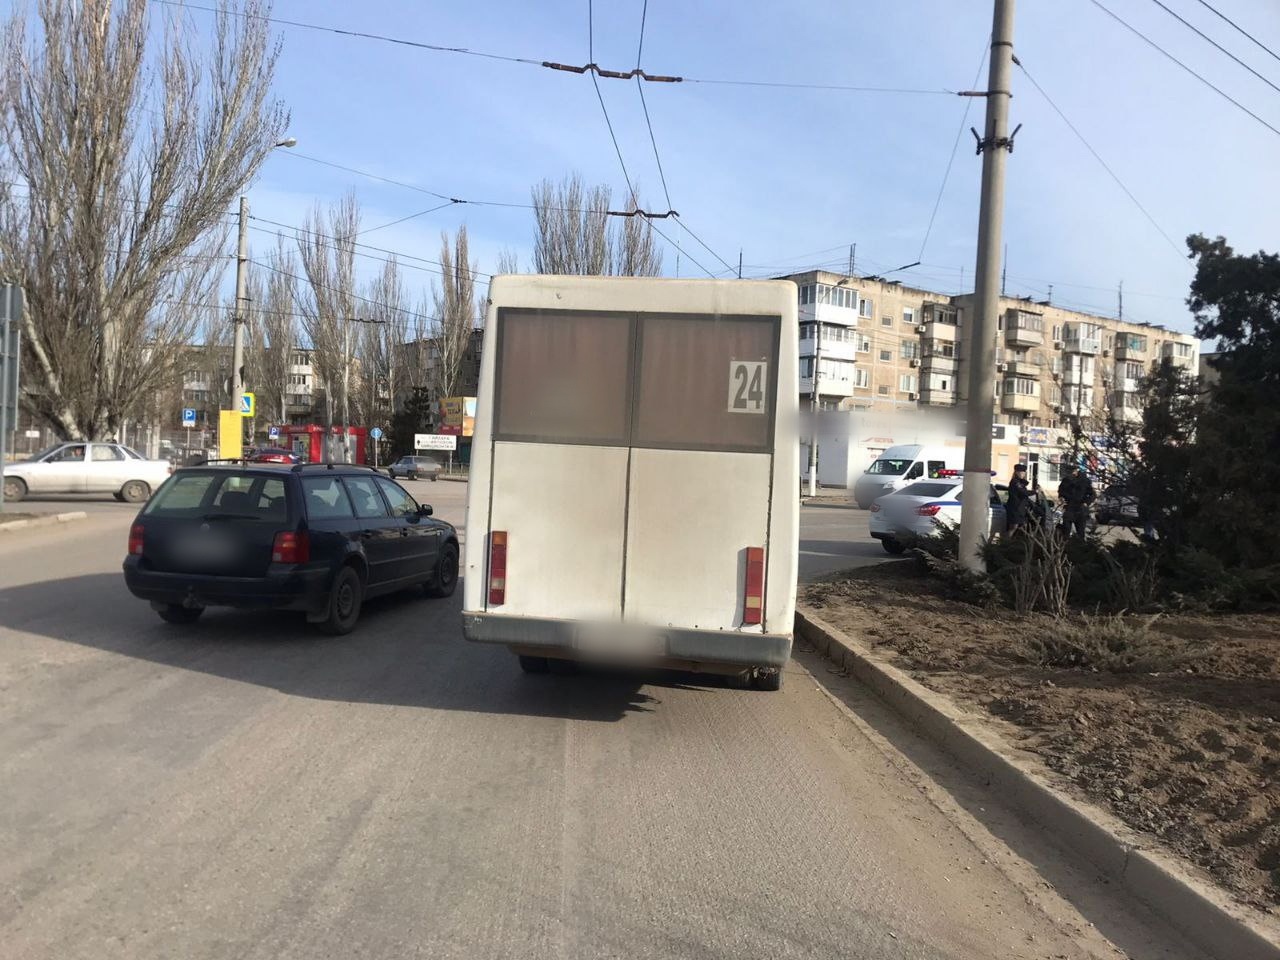 Инцидентом с выпавшим из автобуса ребенком в Крыму занялся Следком